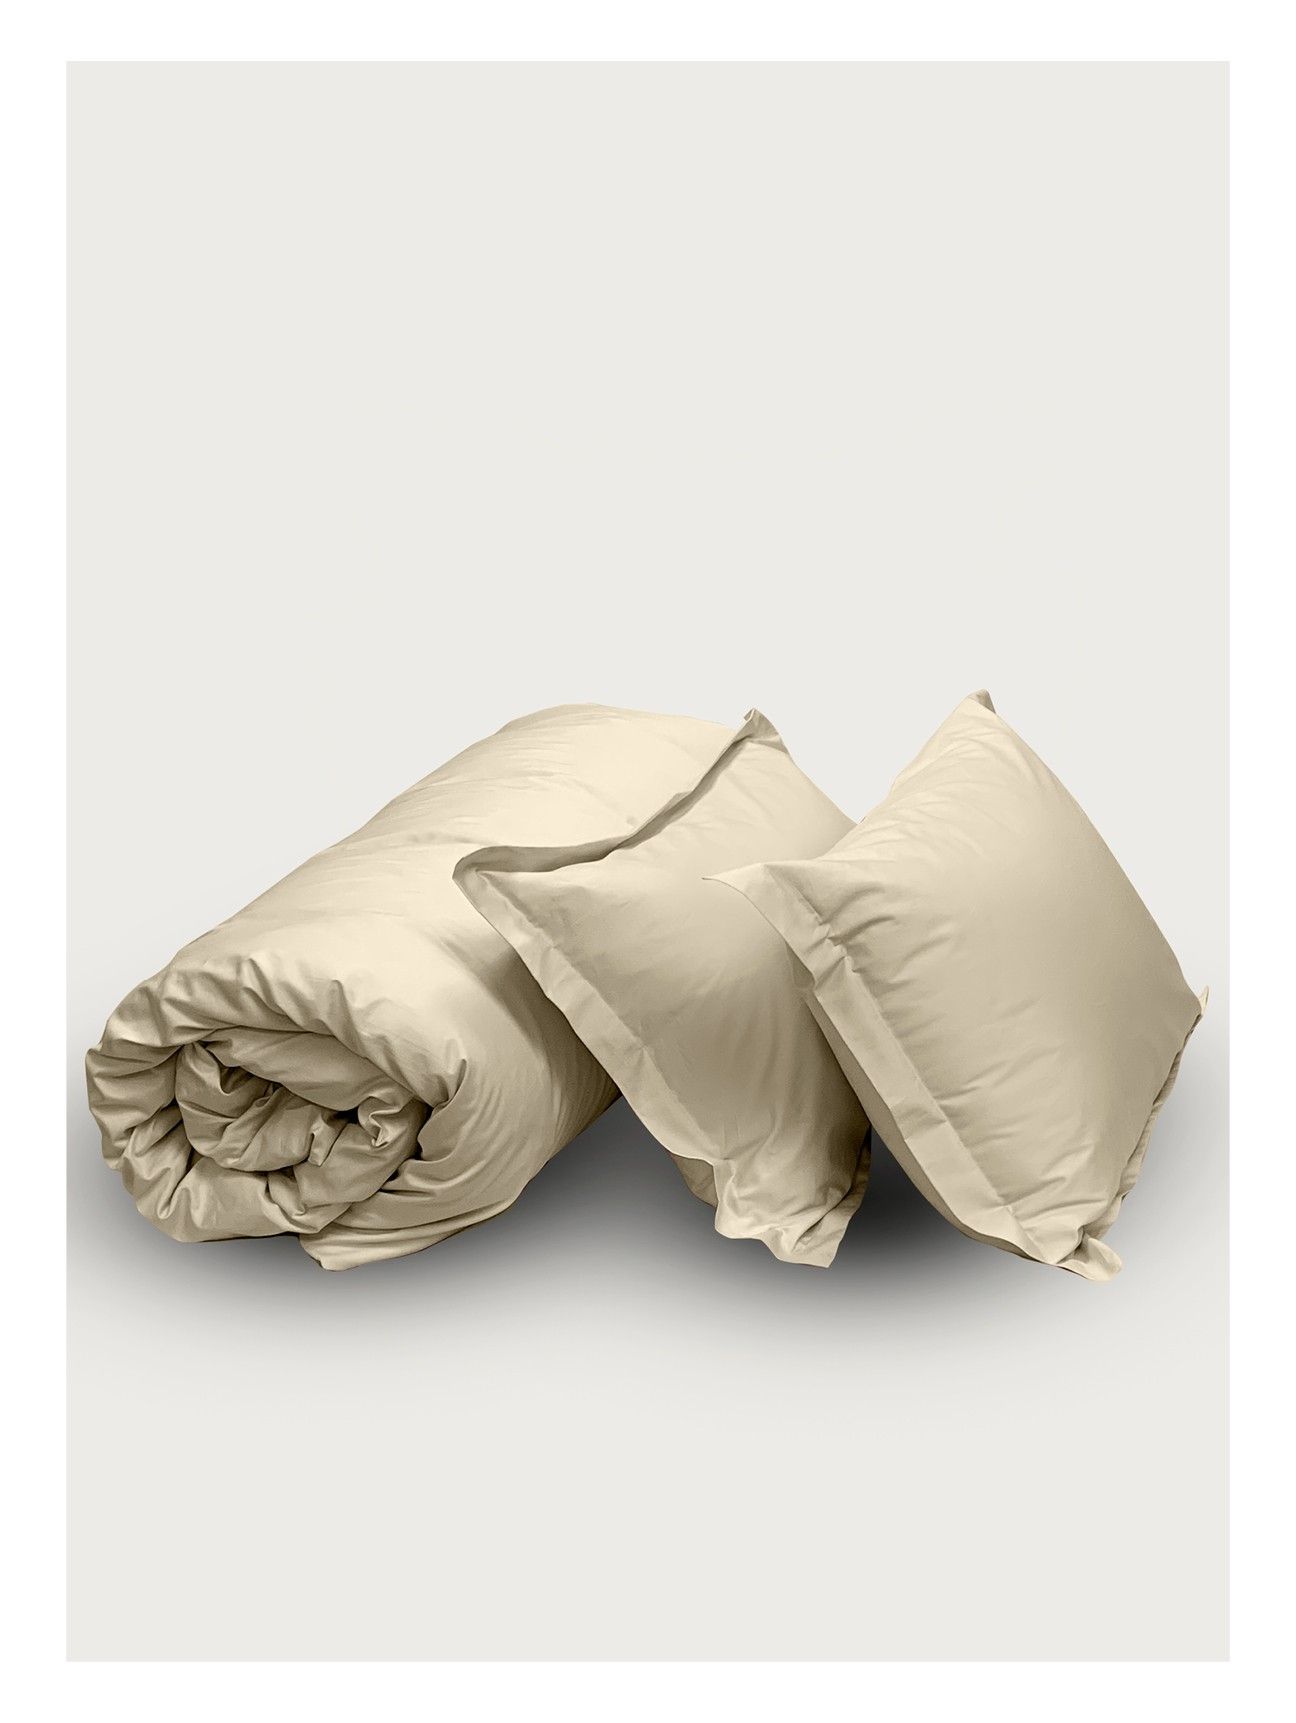 Комплект постельного белья Евро комплект Minimalism Satin Champaigne